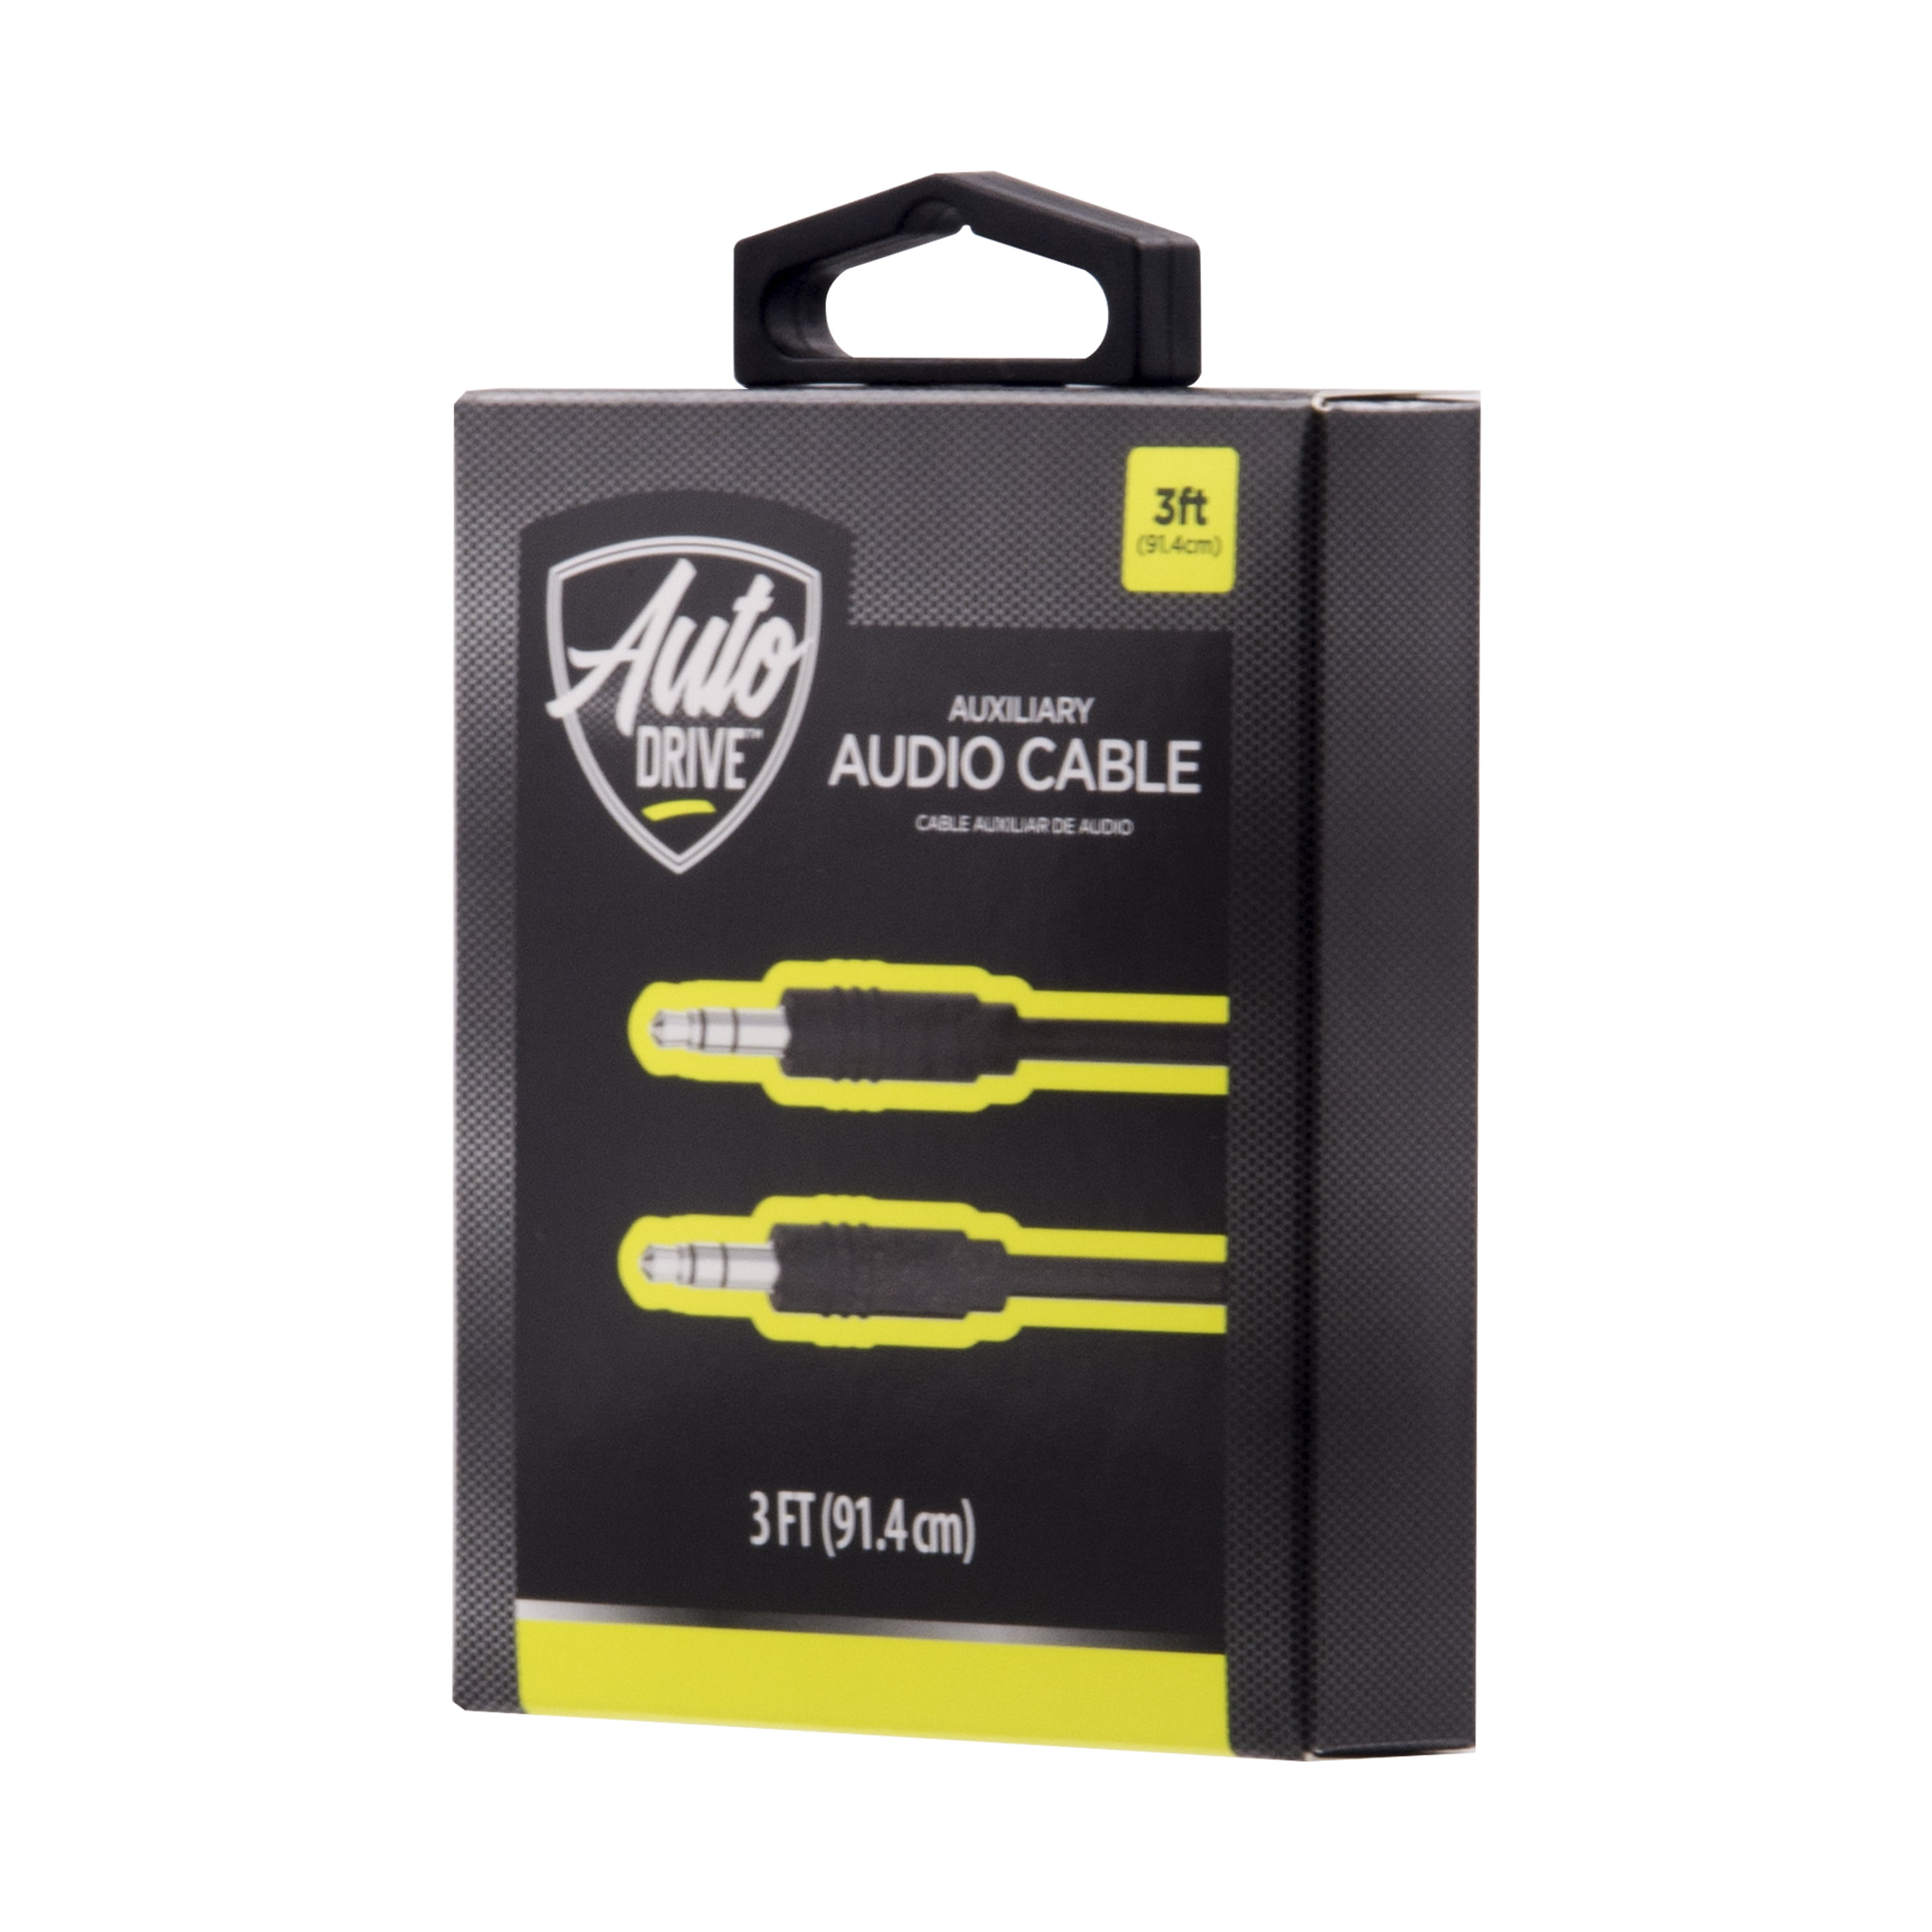 Auto Drive Universal 3.5mm Auxlilary Audio Cable,3ft Long,Black Color,PVC Jacket and PVC Housing, AD19AUX03